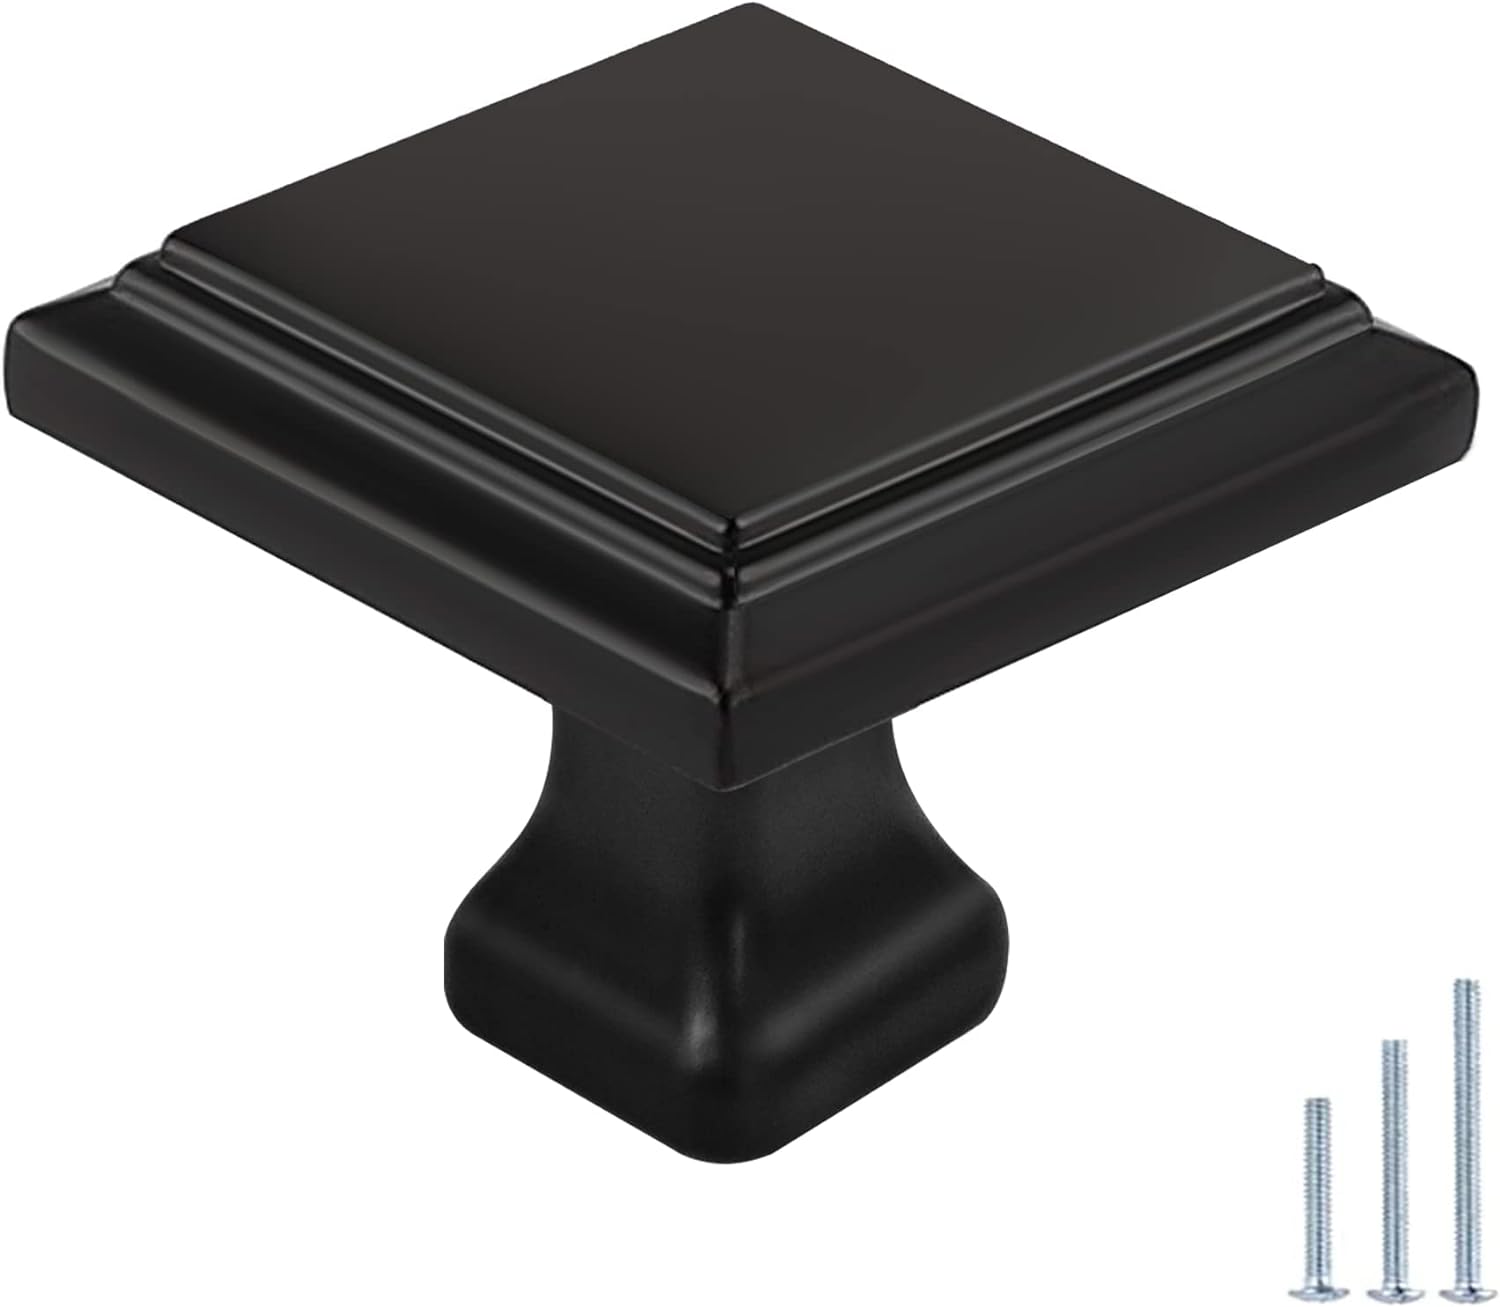 Drawer Knobs,Cabinet Handles Cupboard Dresser Drawer Pulls Modern Hardware Square Black (10pcs) Square Black 10Pack - image 1 of 8